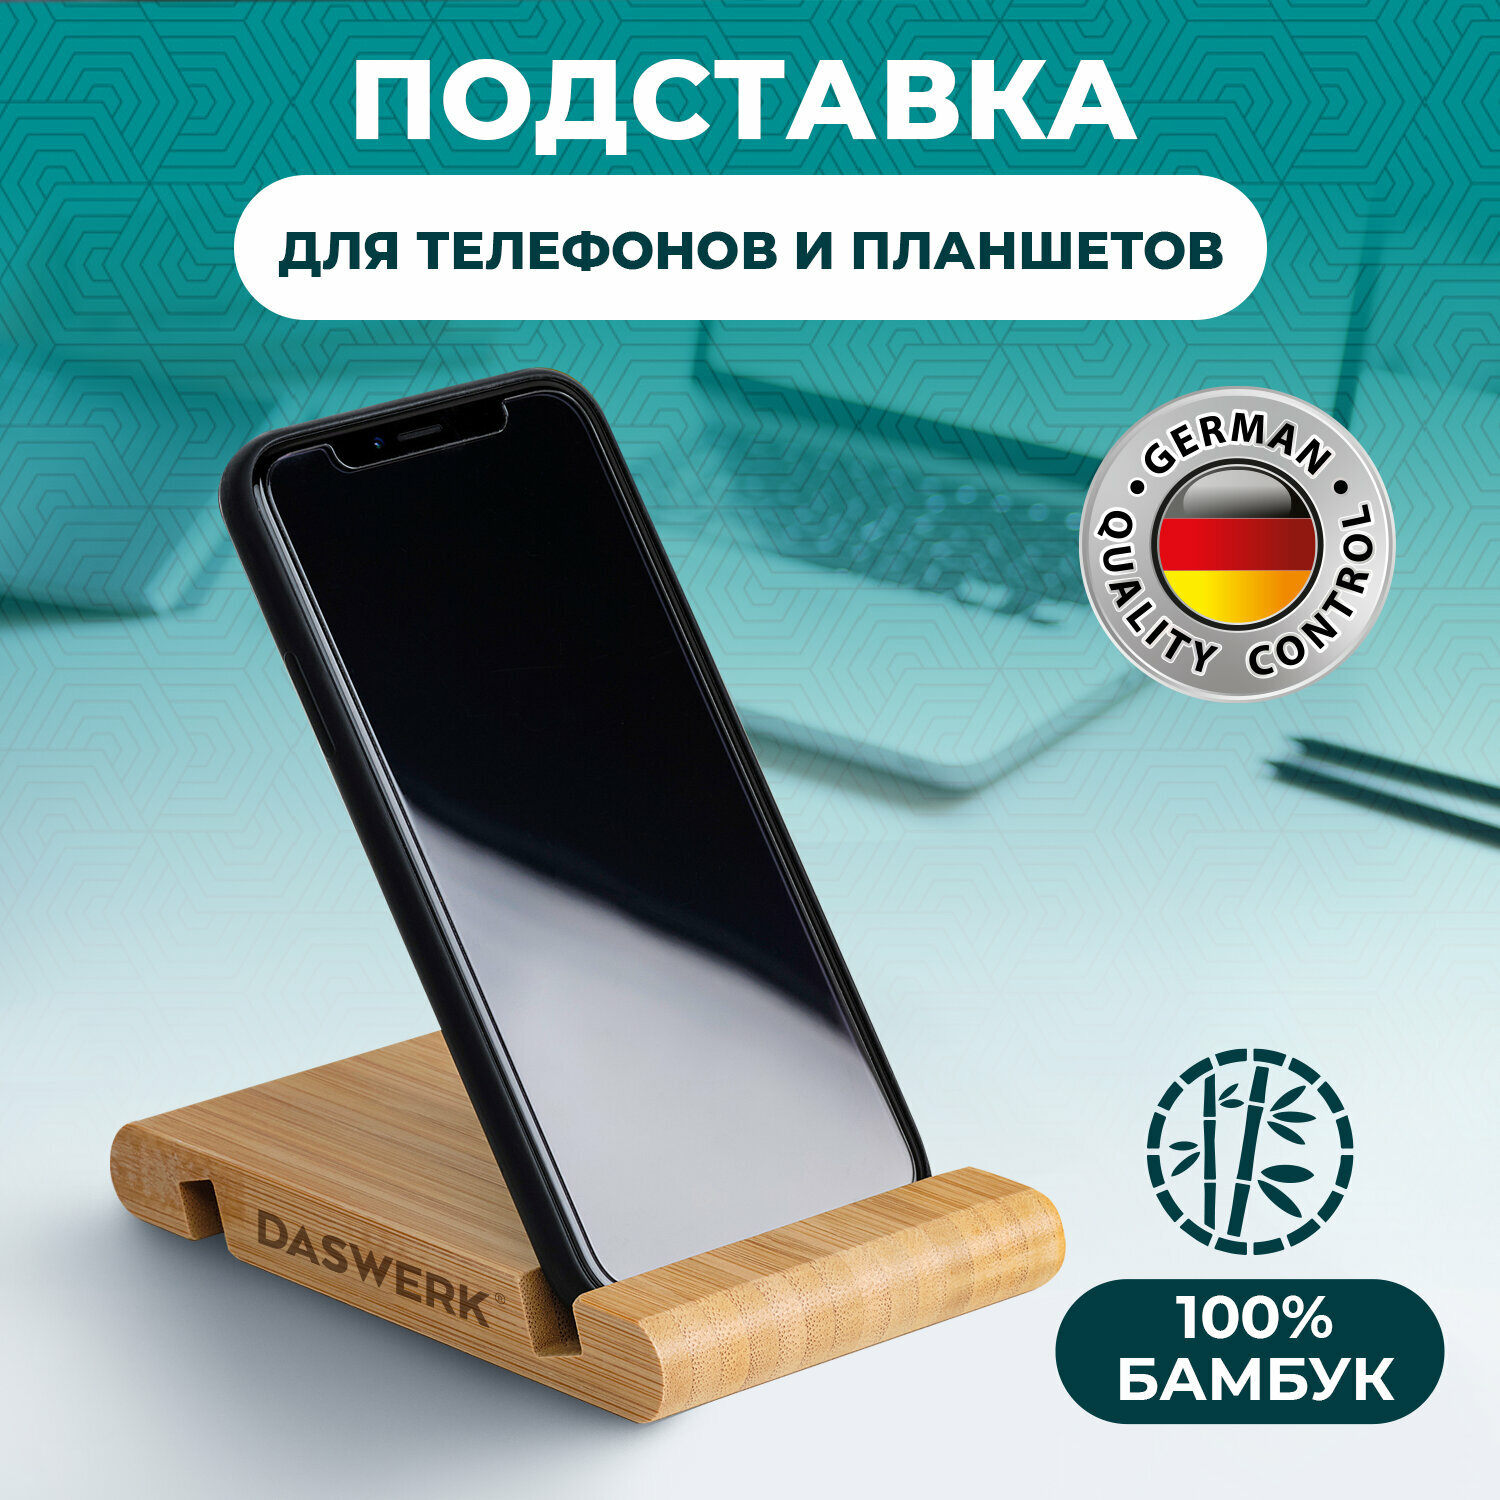 Подставка для телефона настольная, держатель для планшета, электронной книги из бамбука, DASWERK, 263155